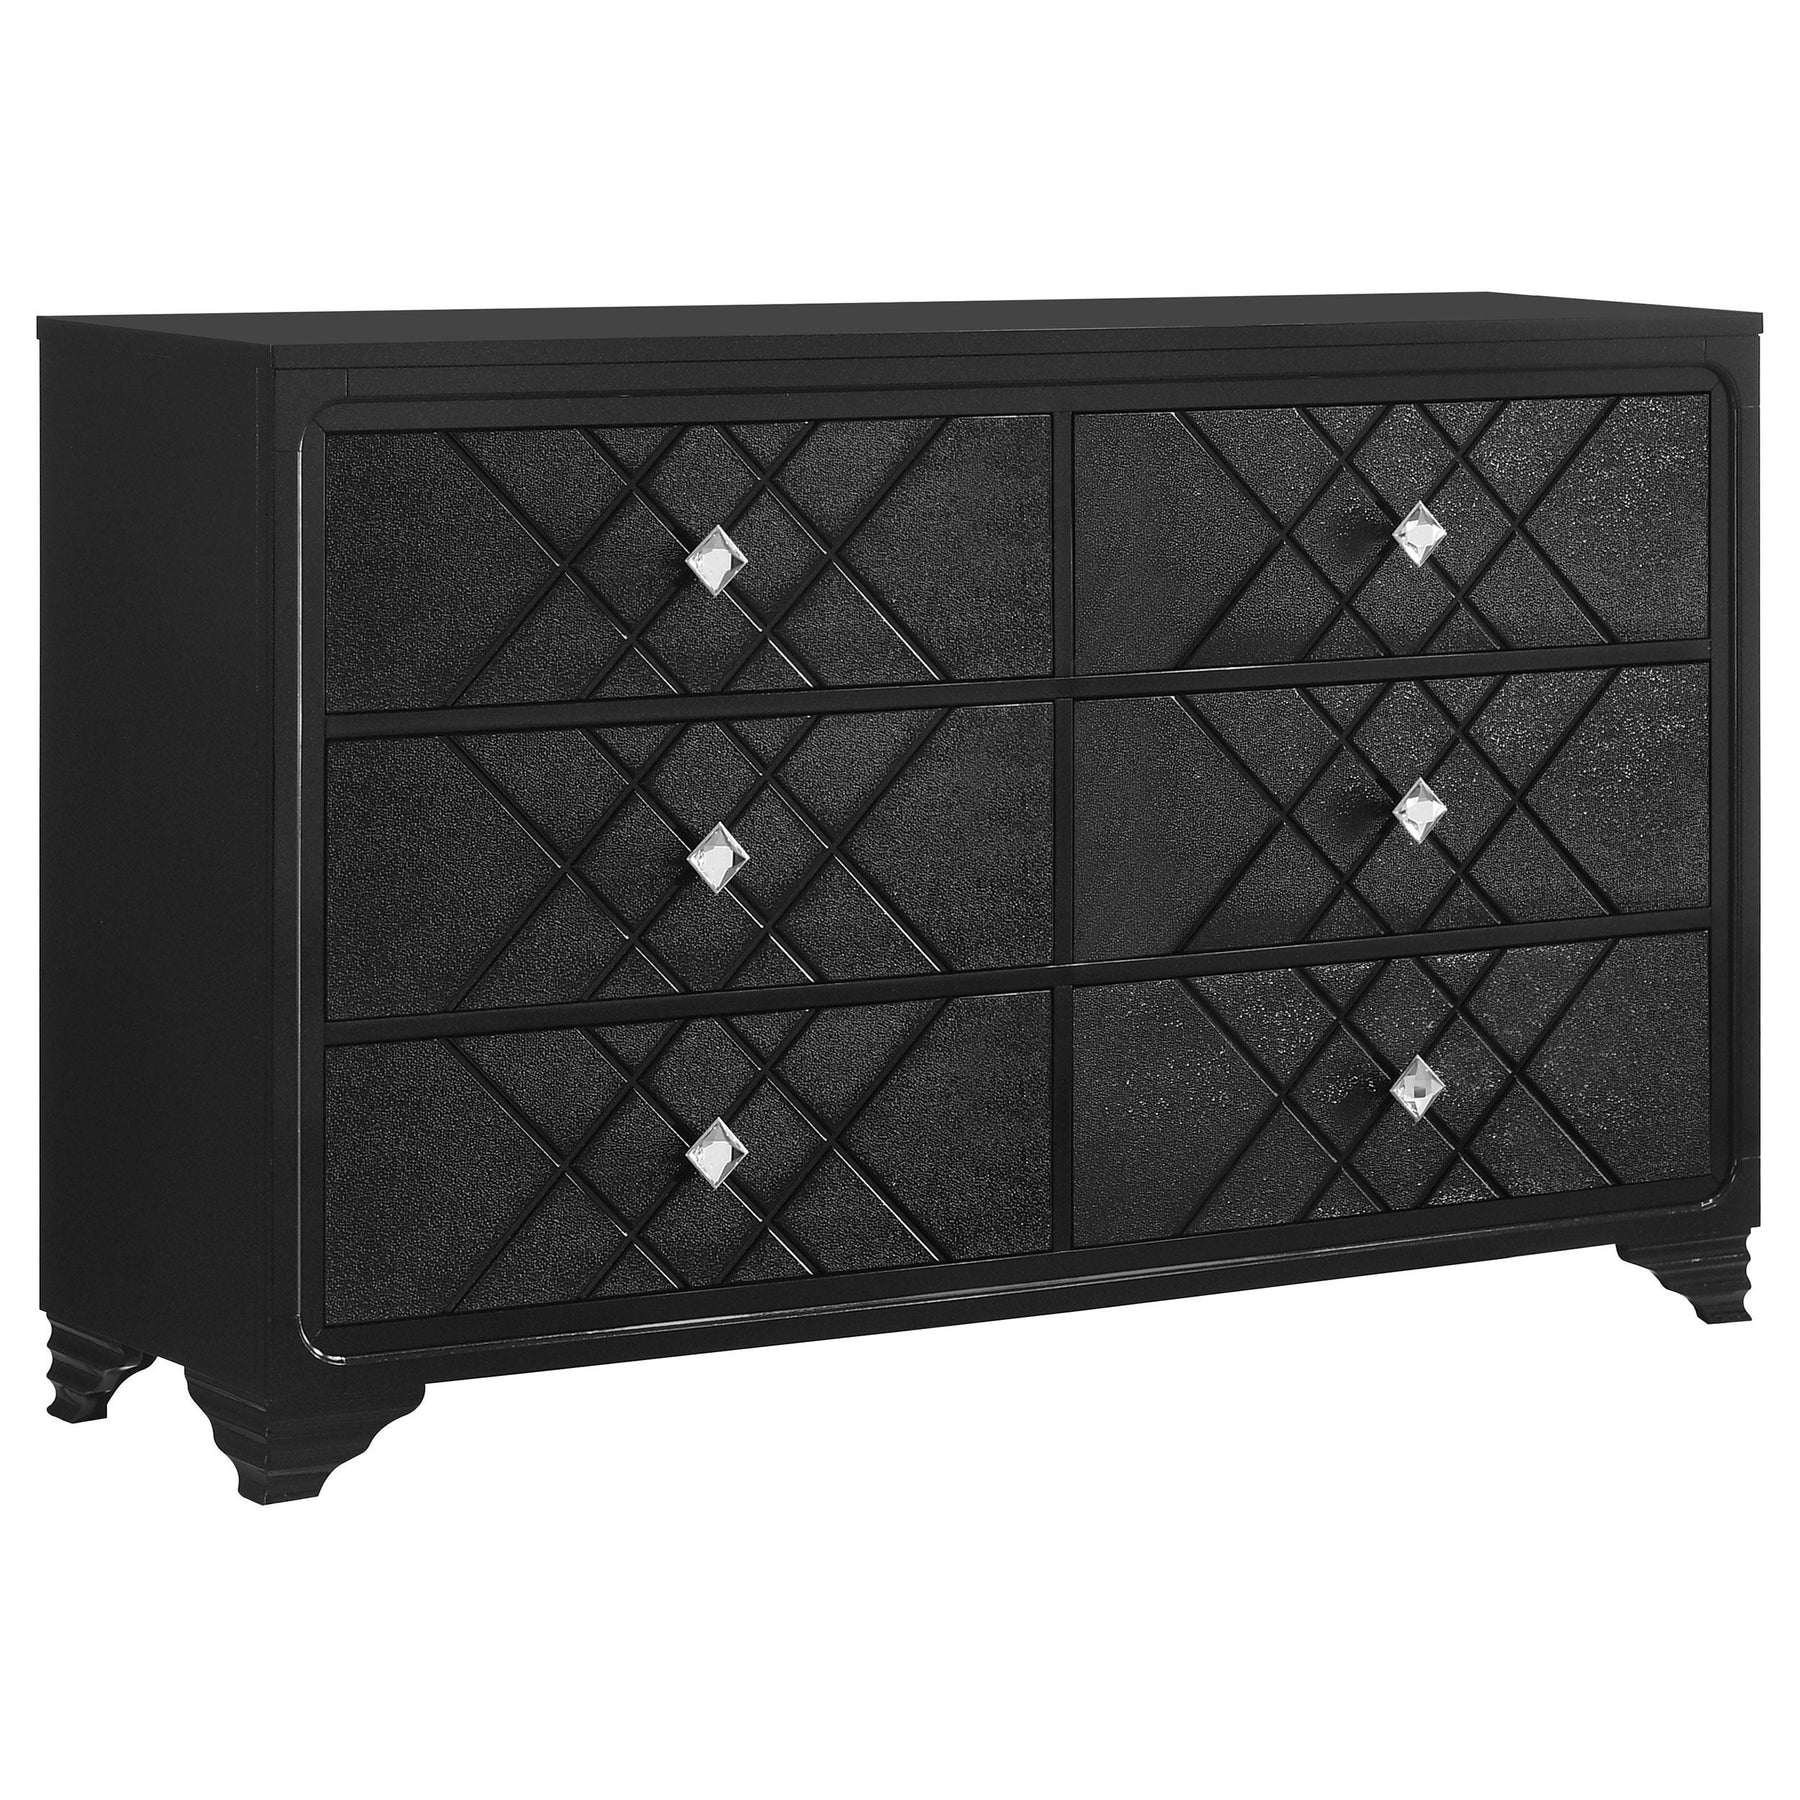 Penelope 6-drawer Dresser Black Penelope 6-drawer Dresser Black Half Price Furniture